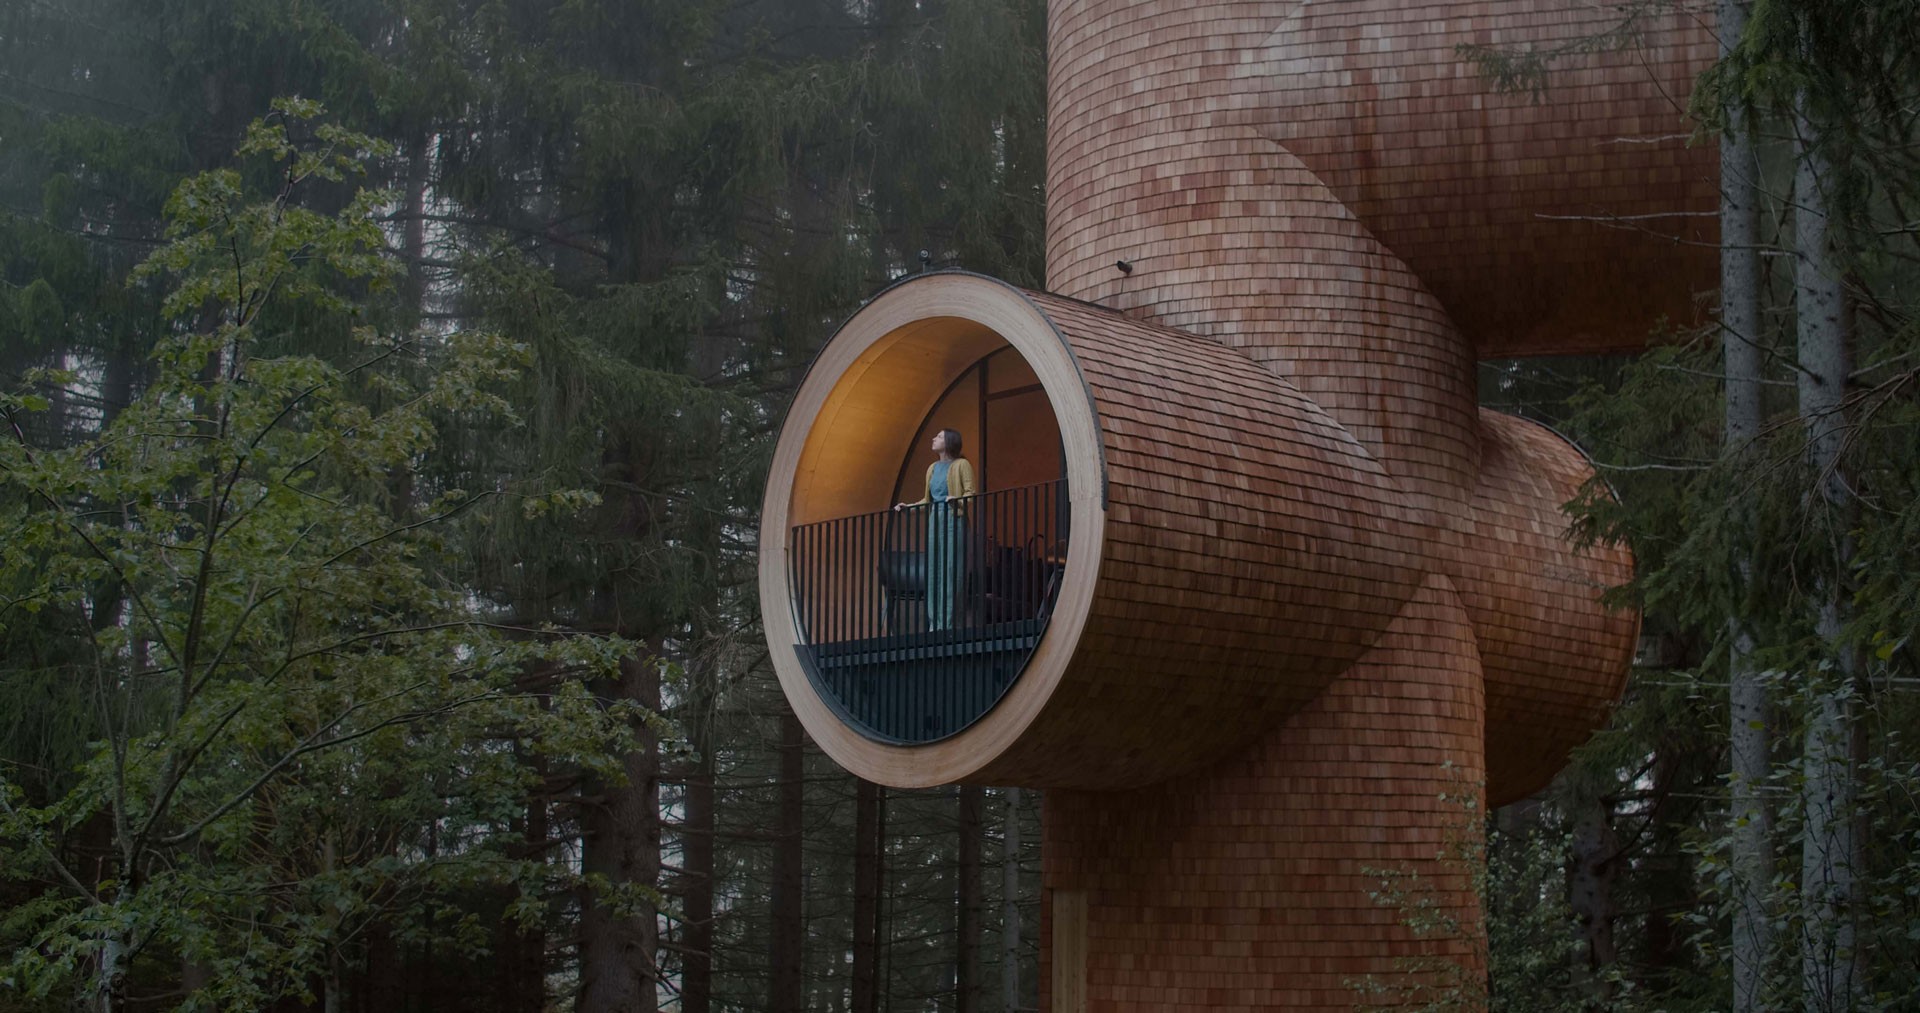 Ein überdimensionales Baumhaus in Rohrform in Mitten eines Waldes.